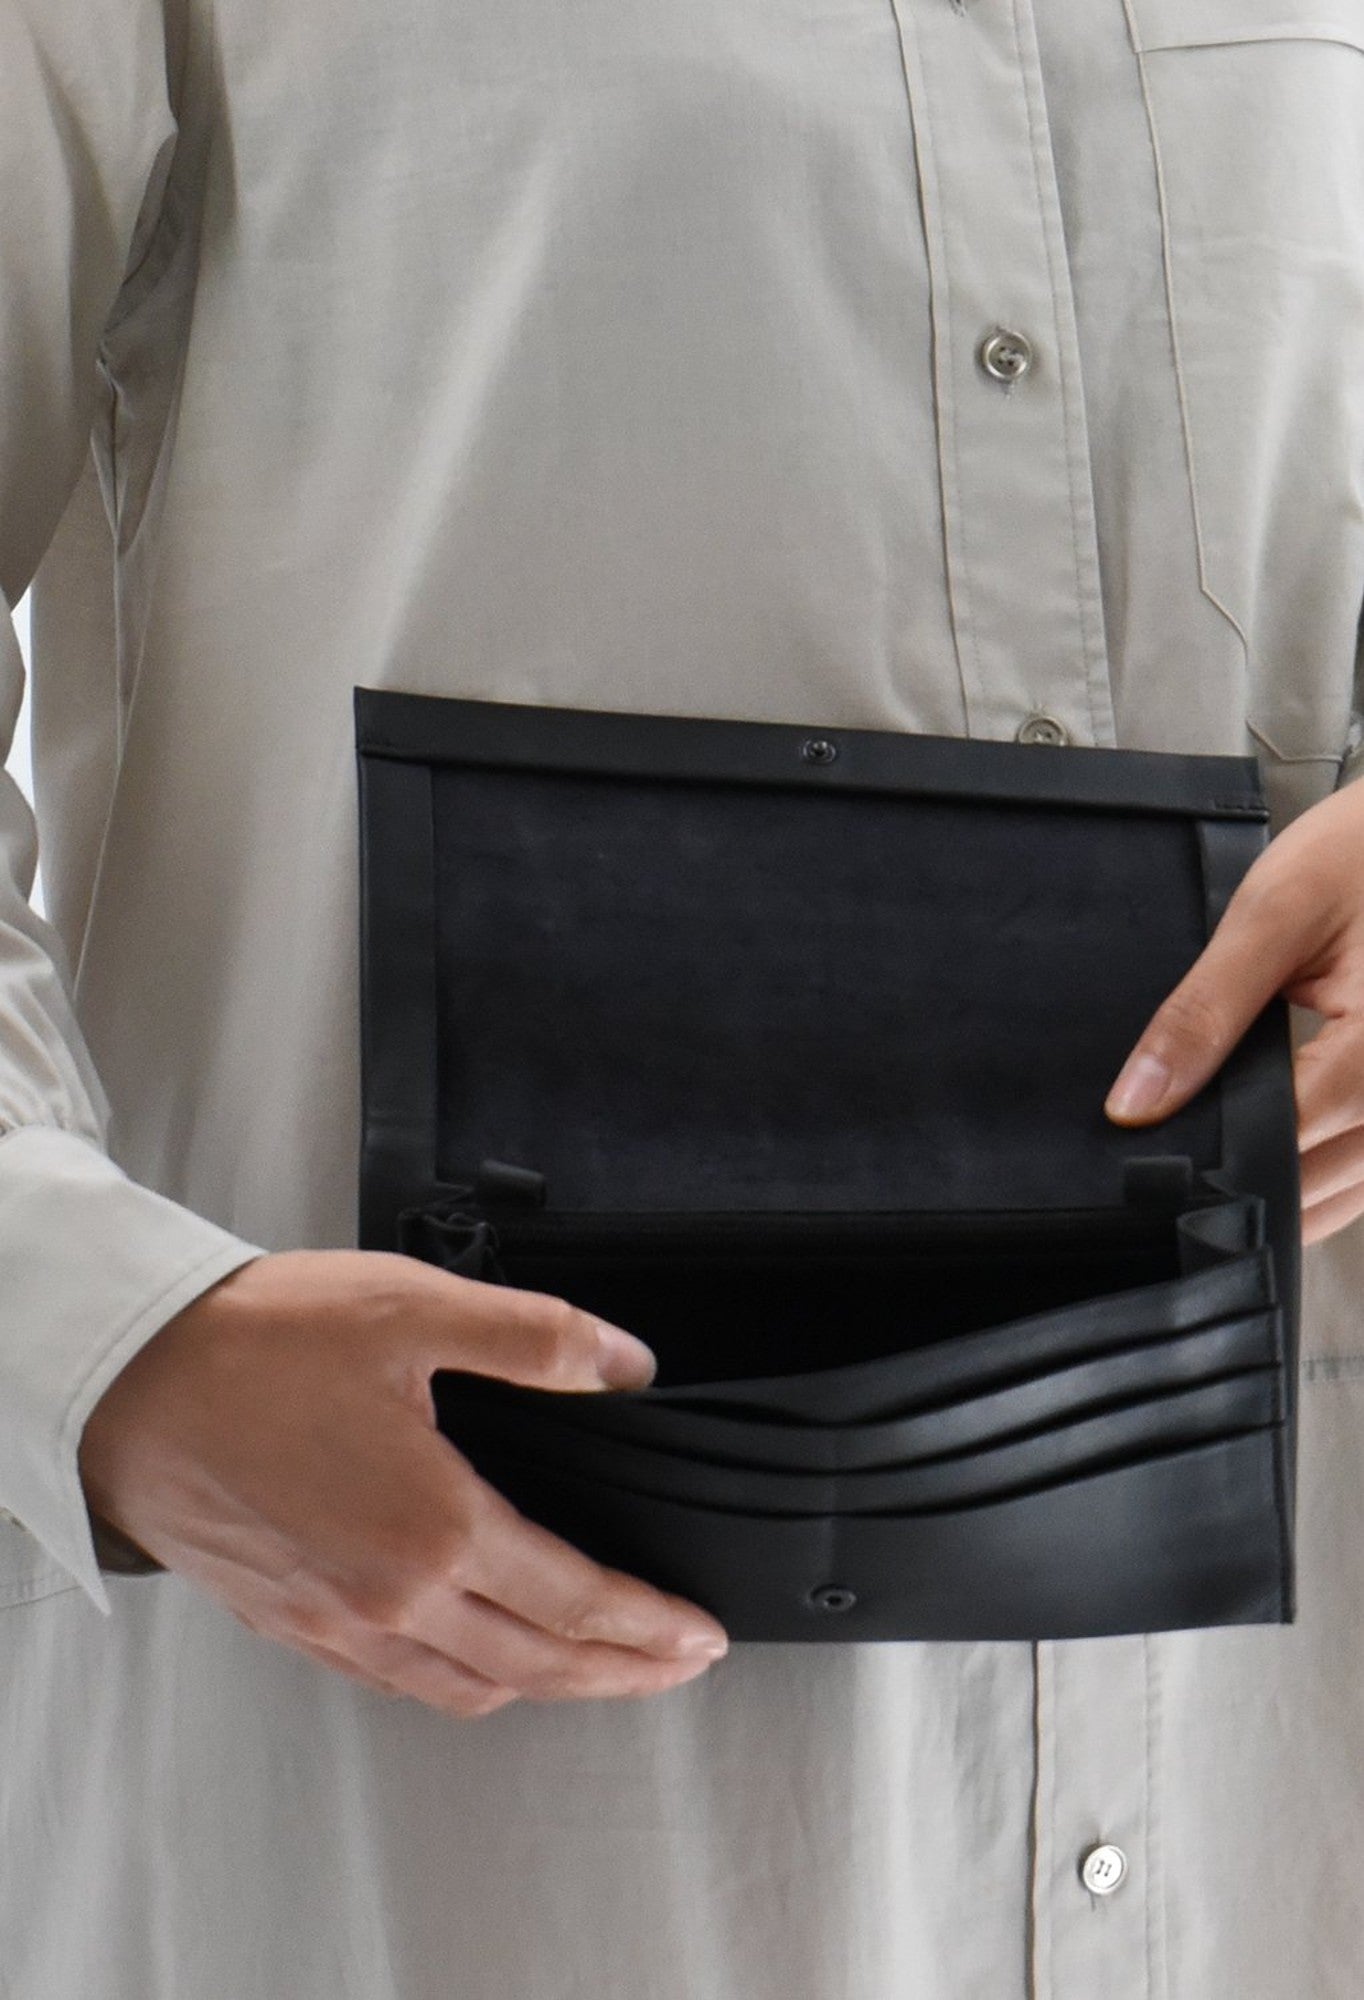 formal belt for men – Walletsnbags